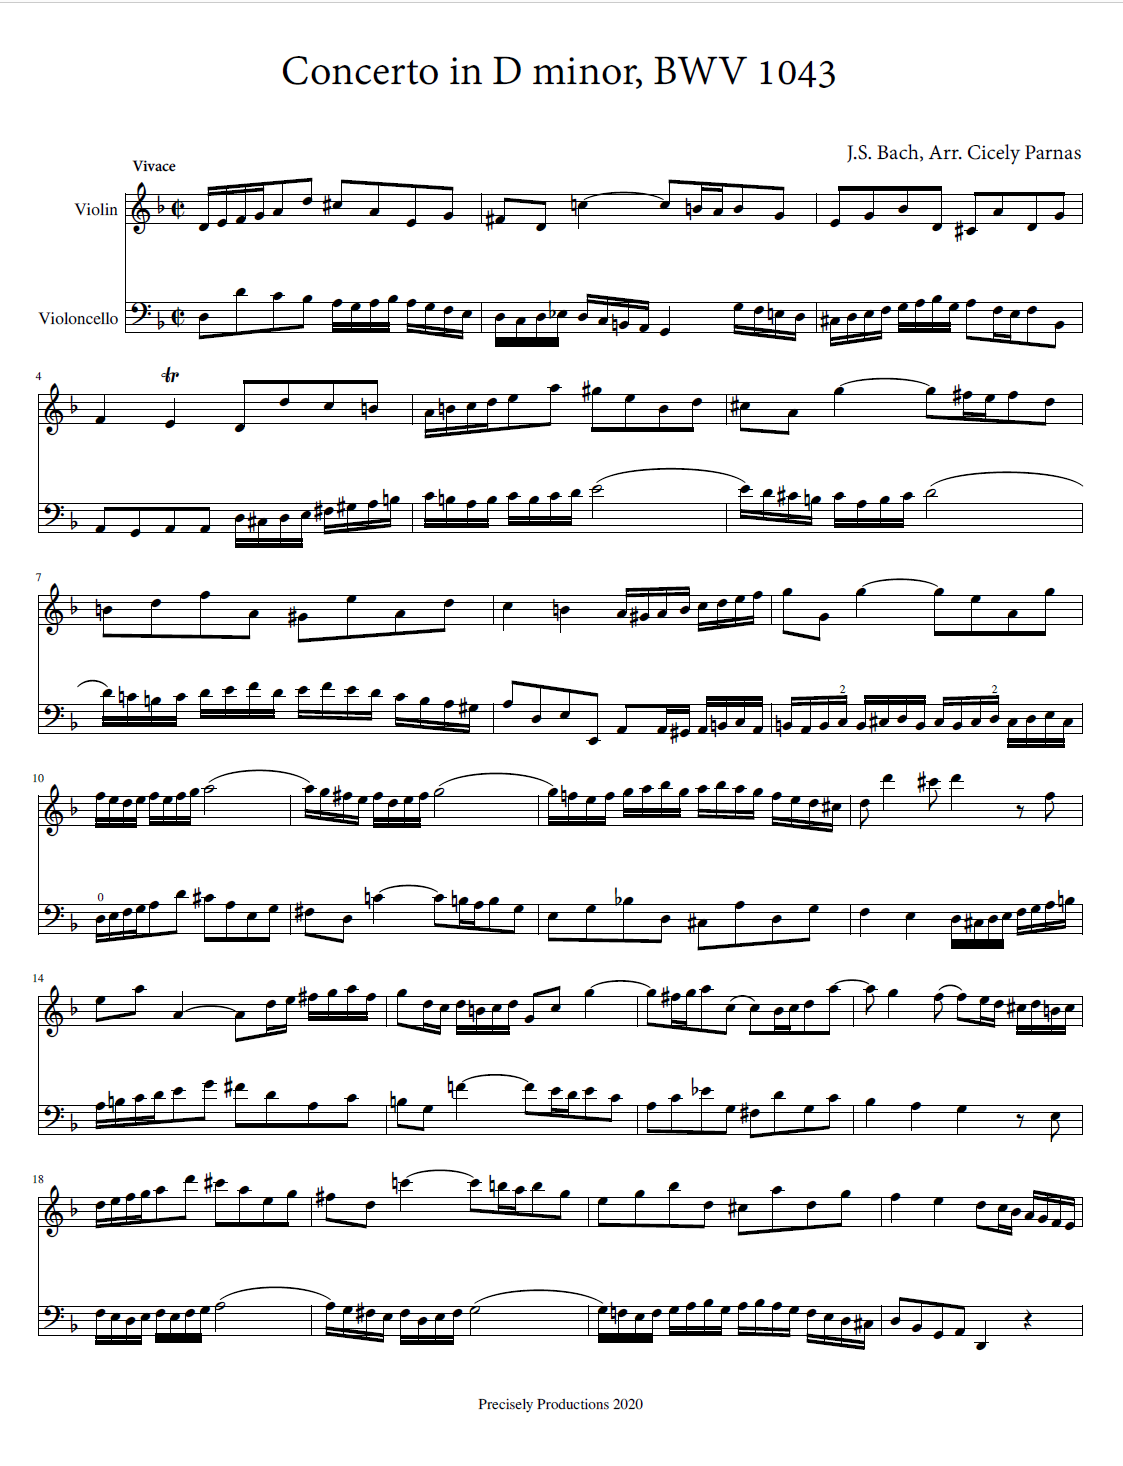 Violin Concerto/Cello..